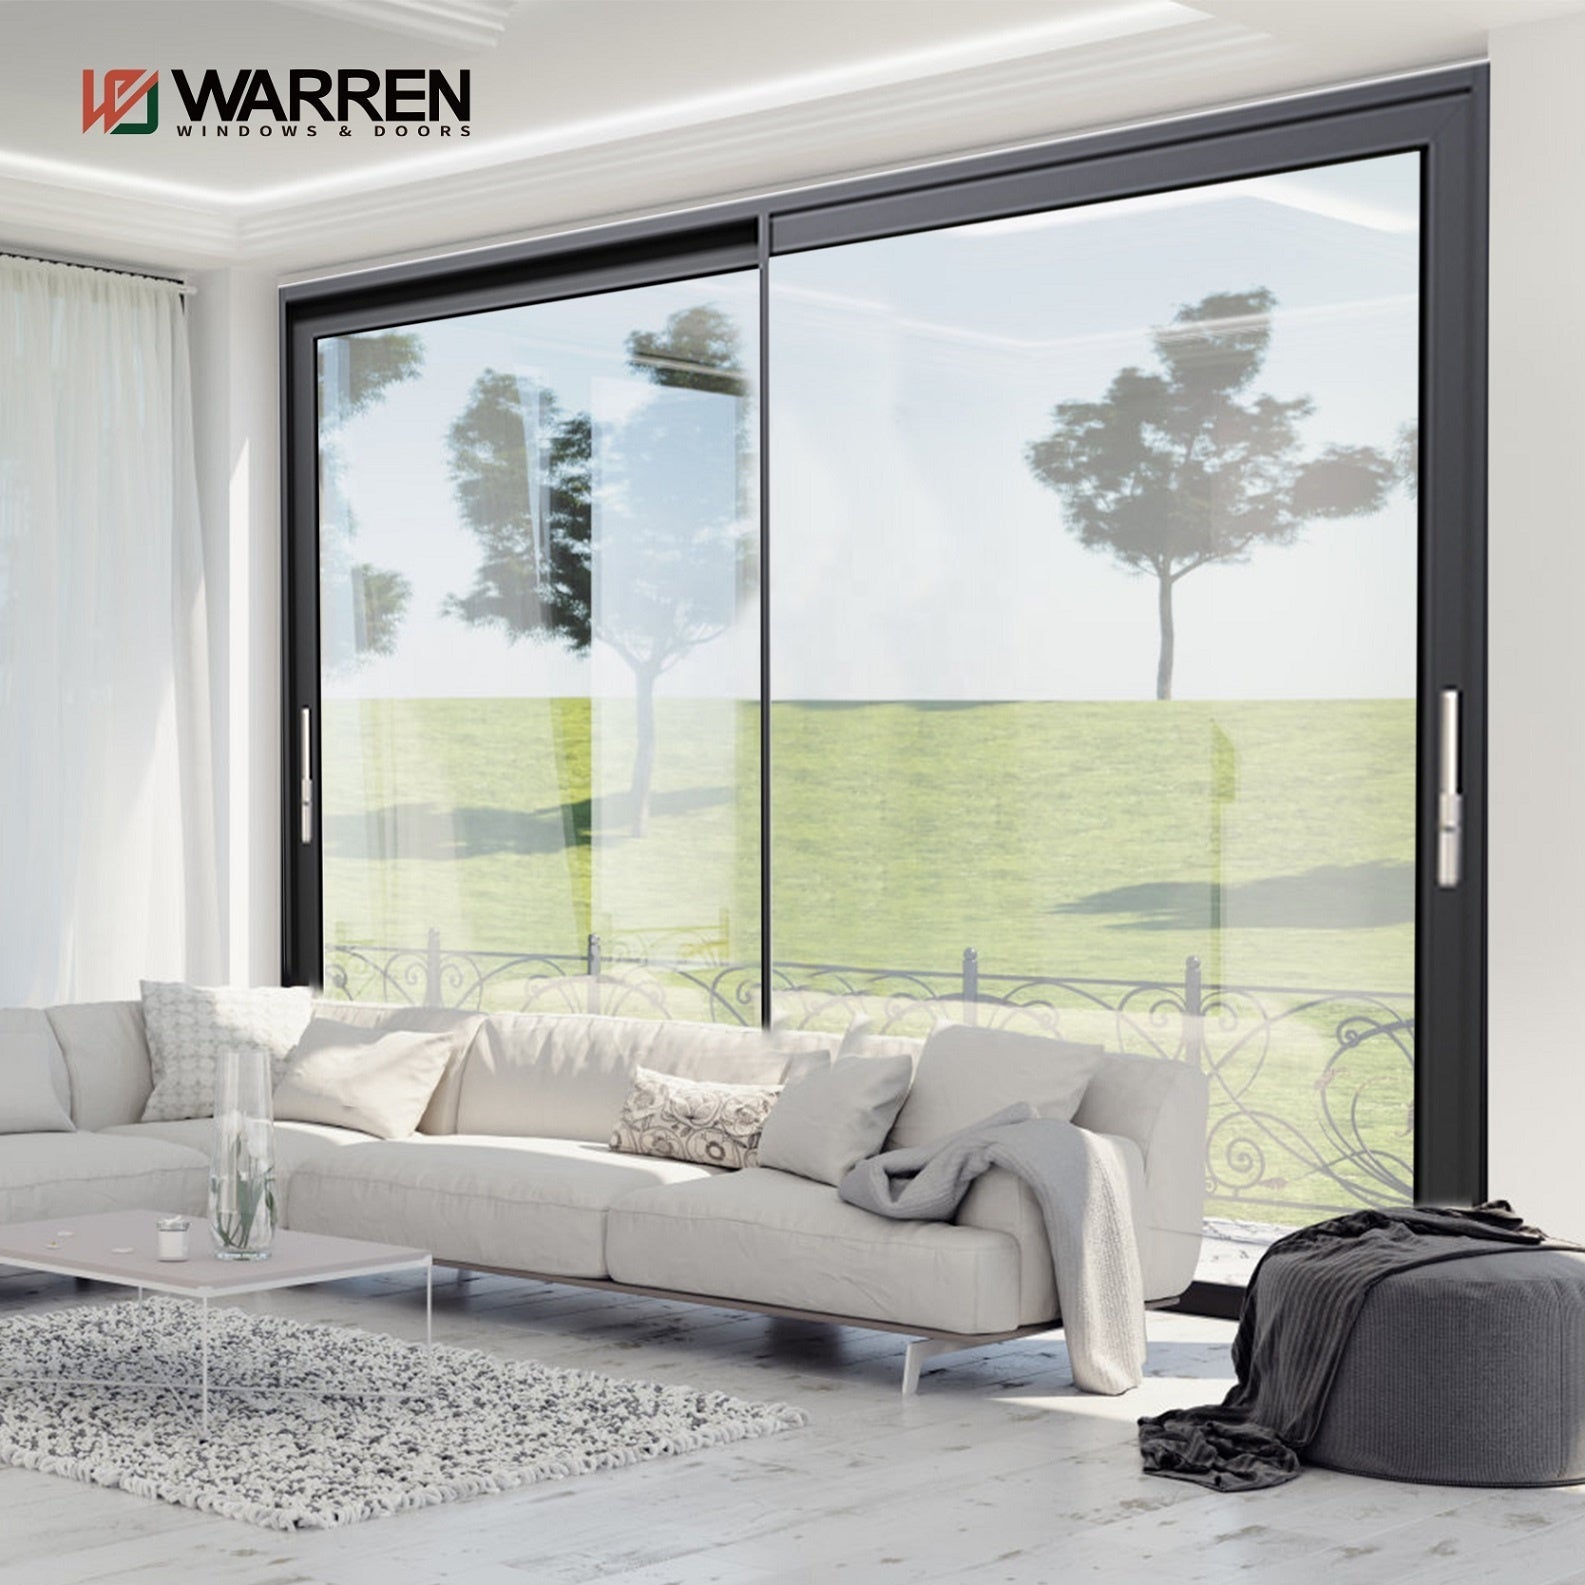 Warren 72x96 sliding door patio glass aluminium thermal break window glass colors